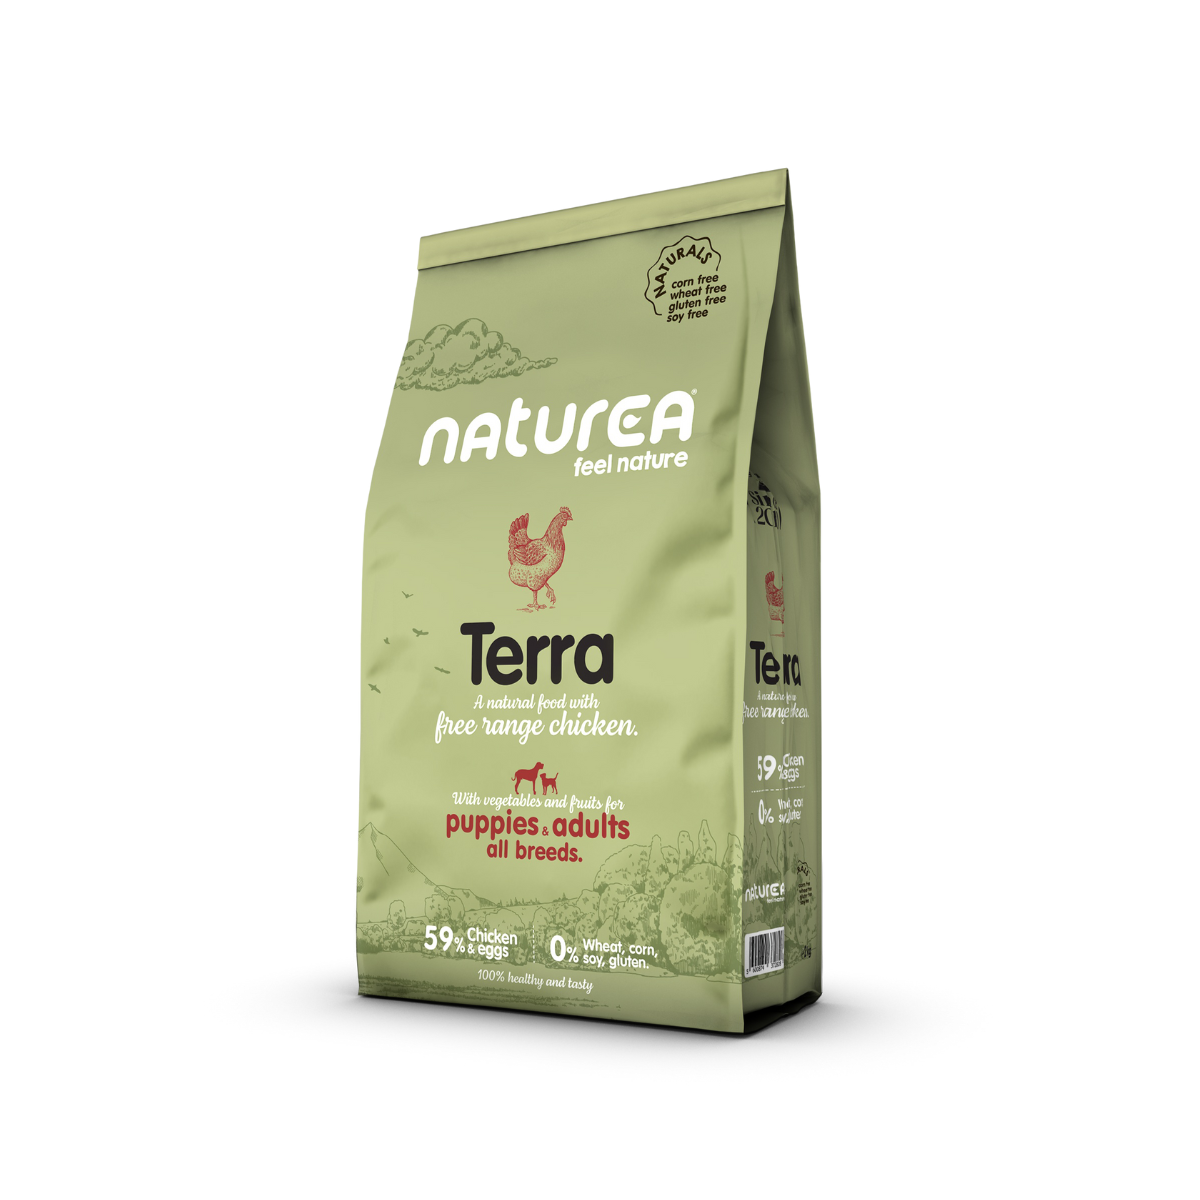 Высококачественный корм с содержанием куриного мяса и яиц 59% для взрослых собак NATUREA TERRA.